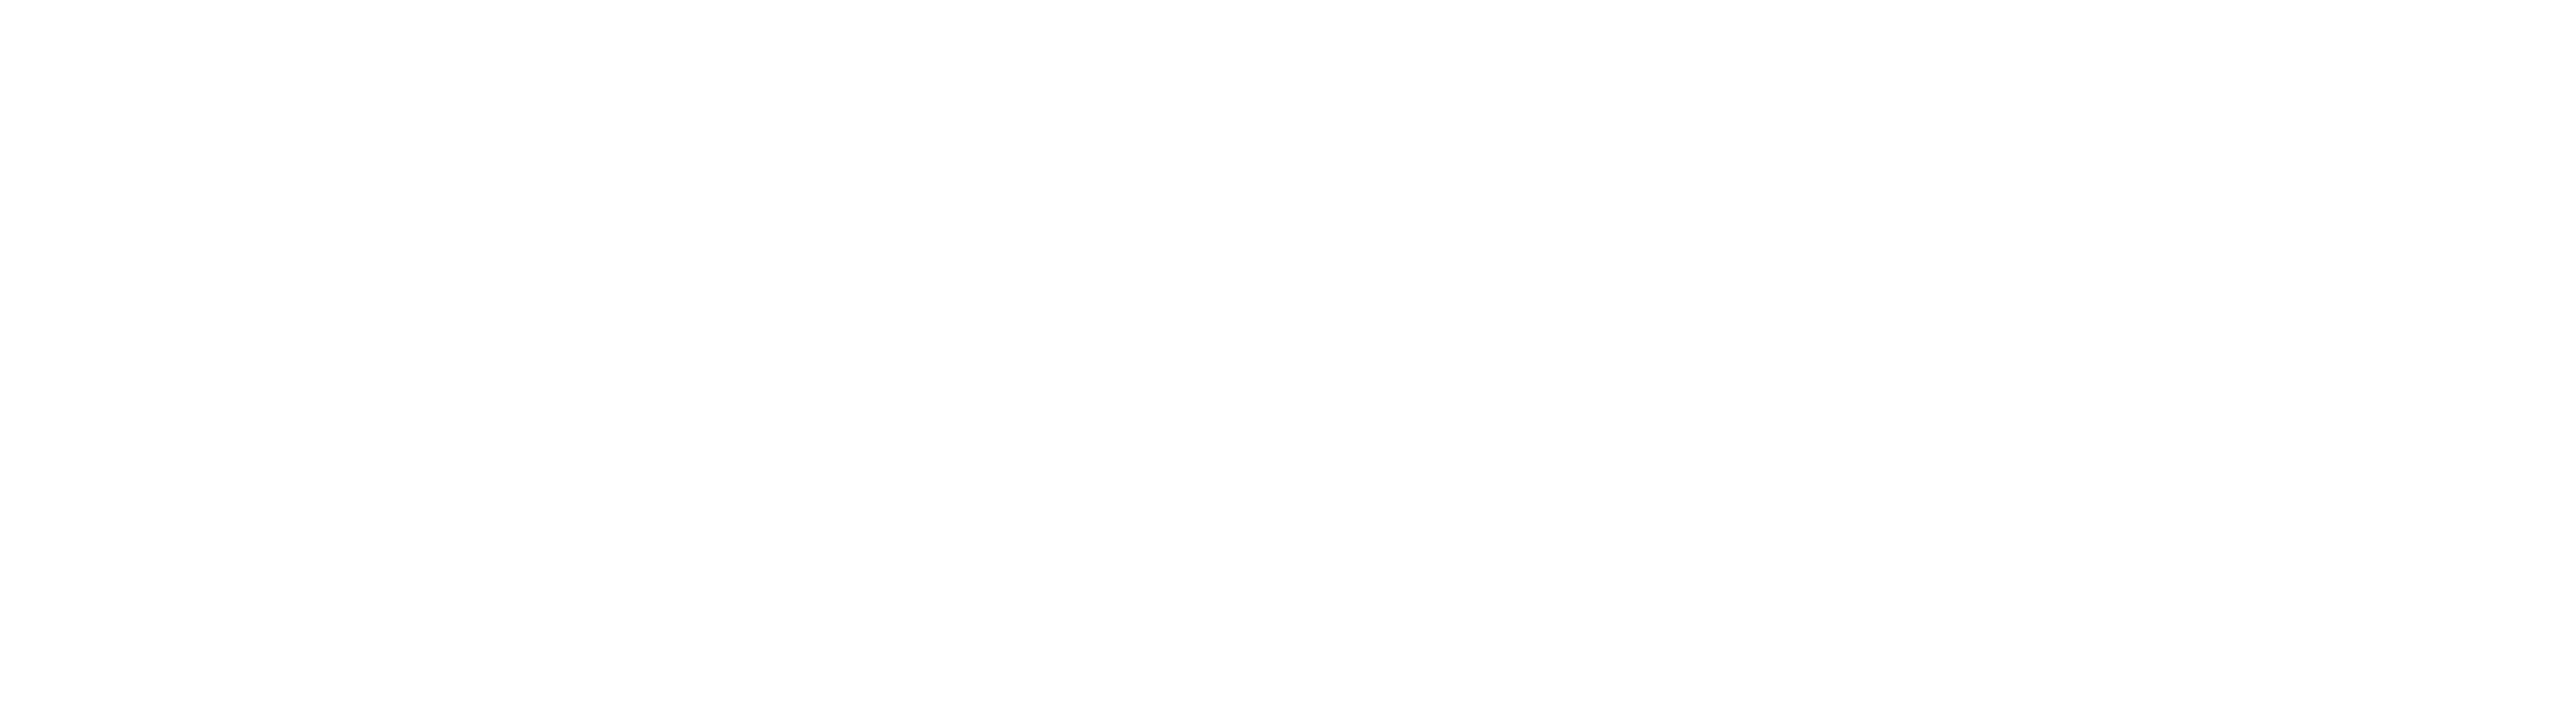 Solvely